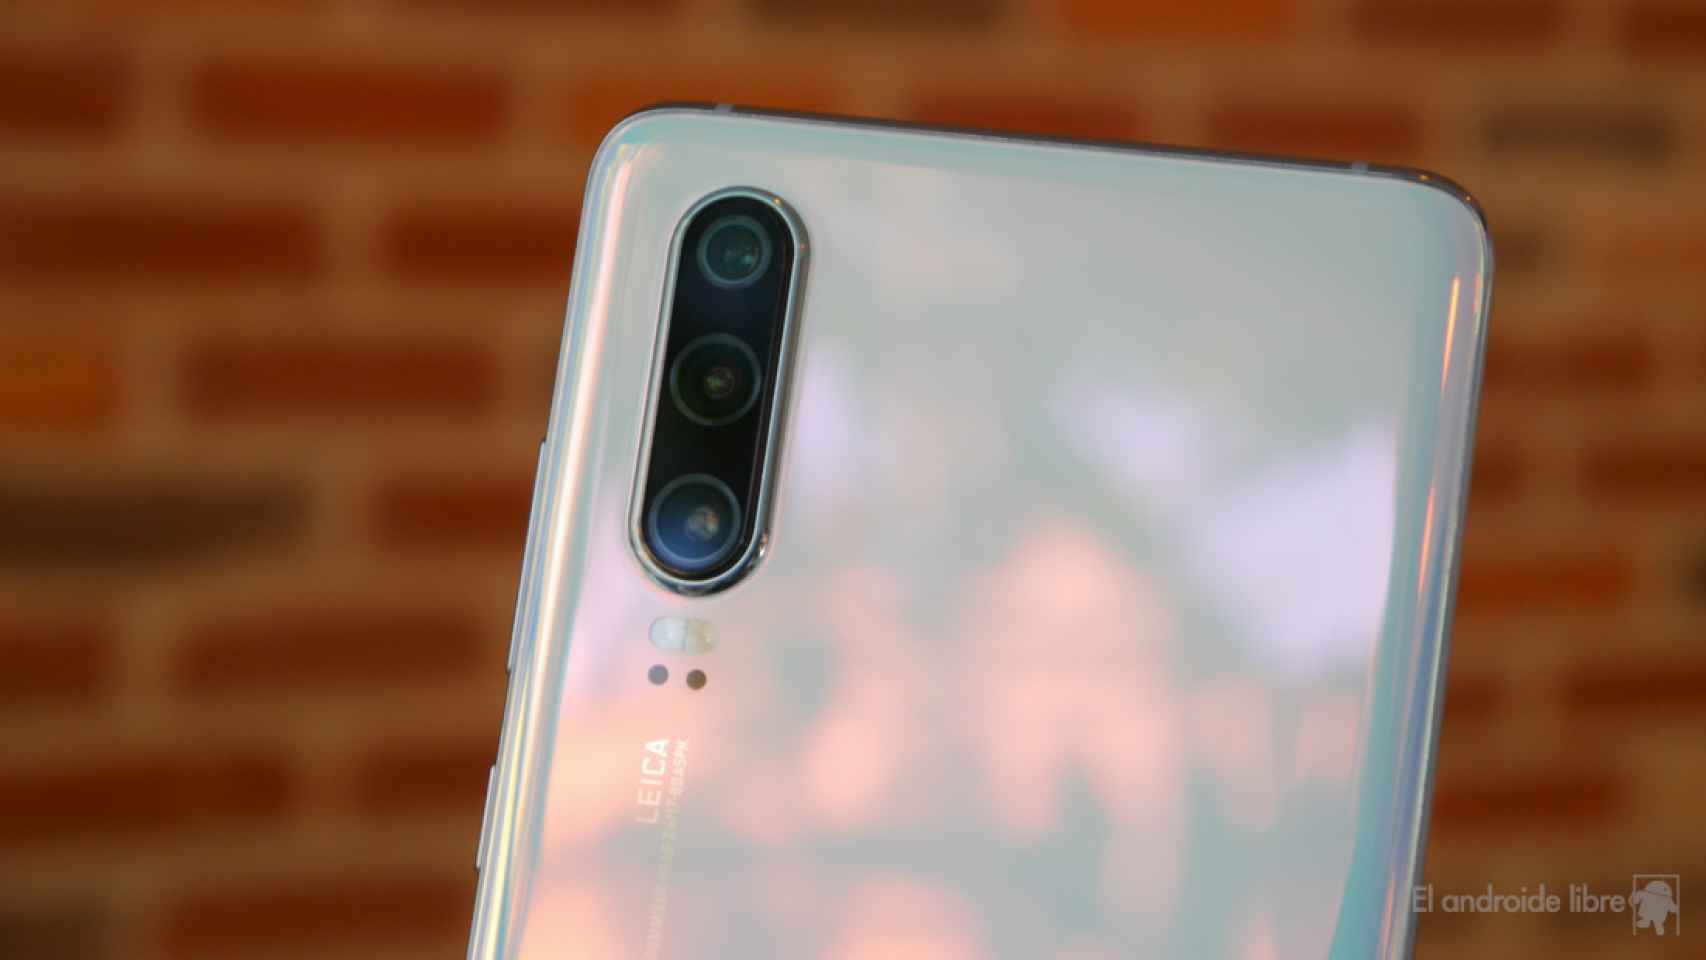 Las cámaras escondidas bajo la pantalla también llegarán a los móviles Huawei